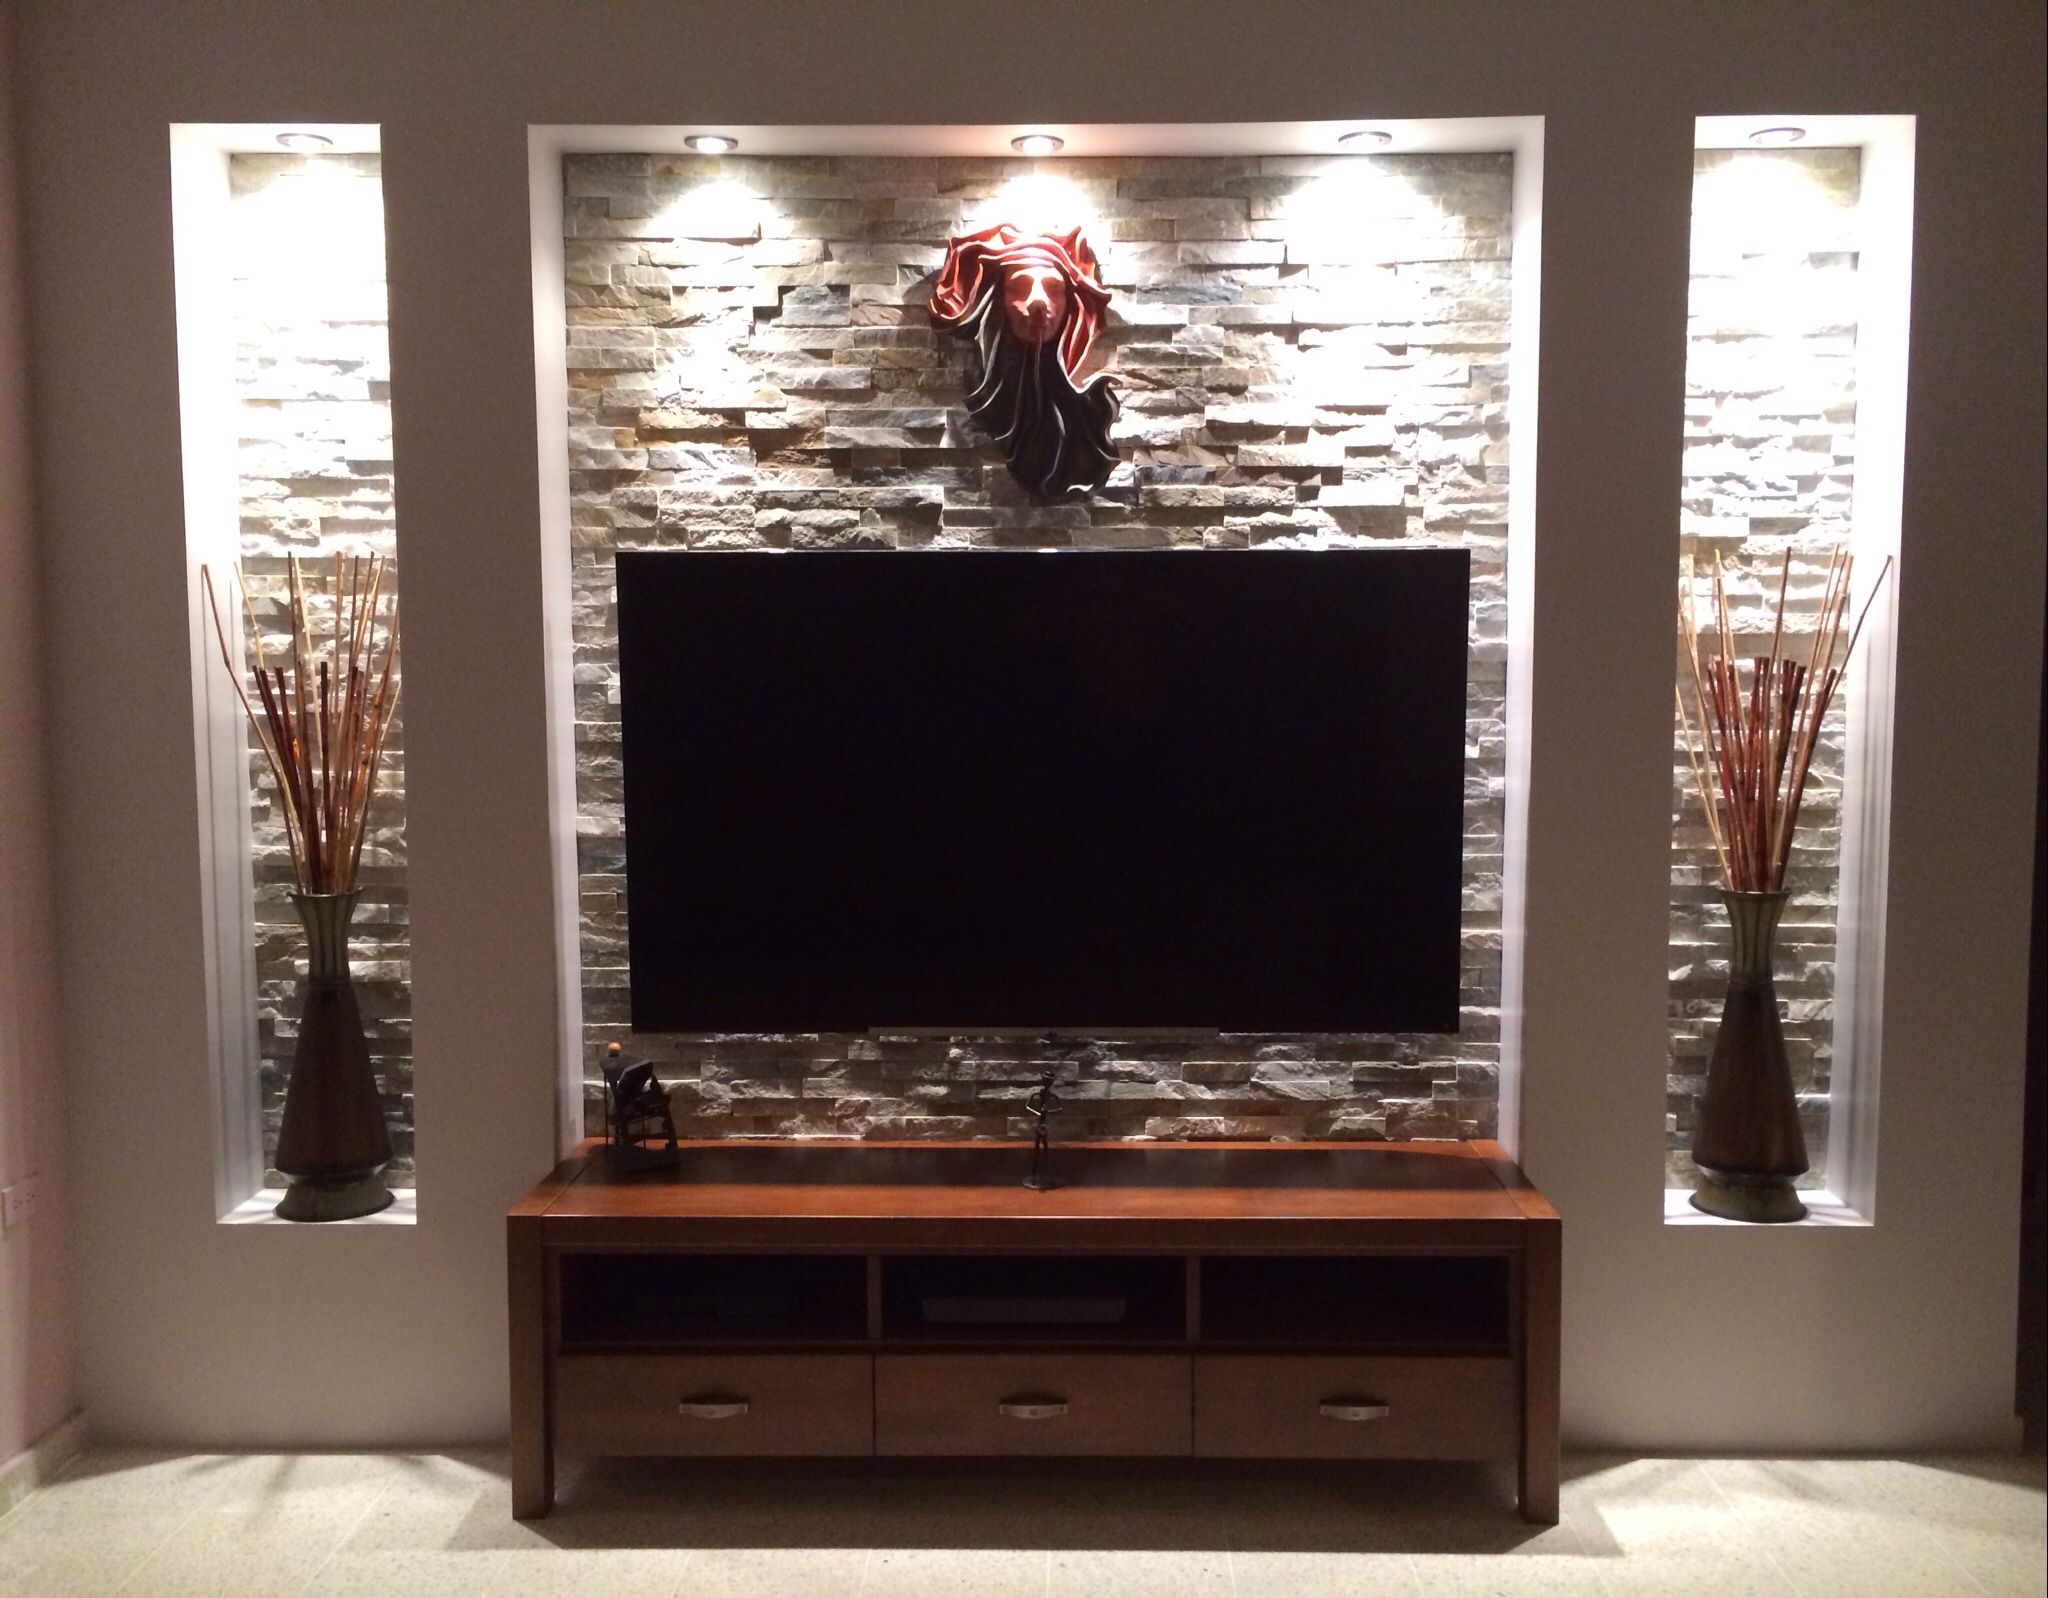 ¿Cómo hacer un mueble de pared para TV paso a paso?